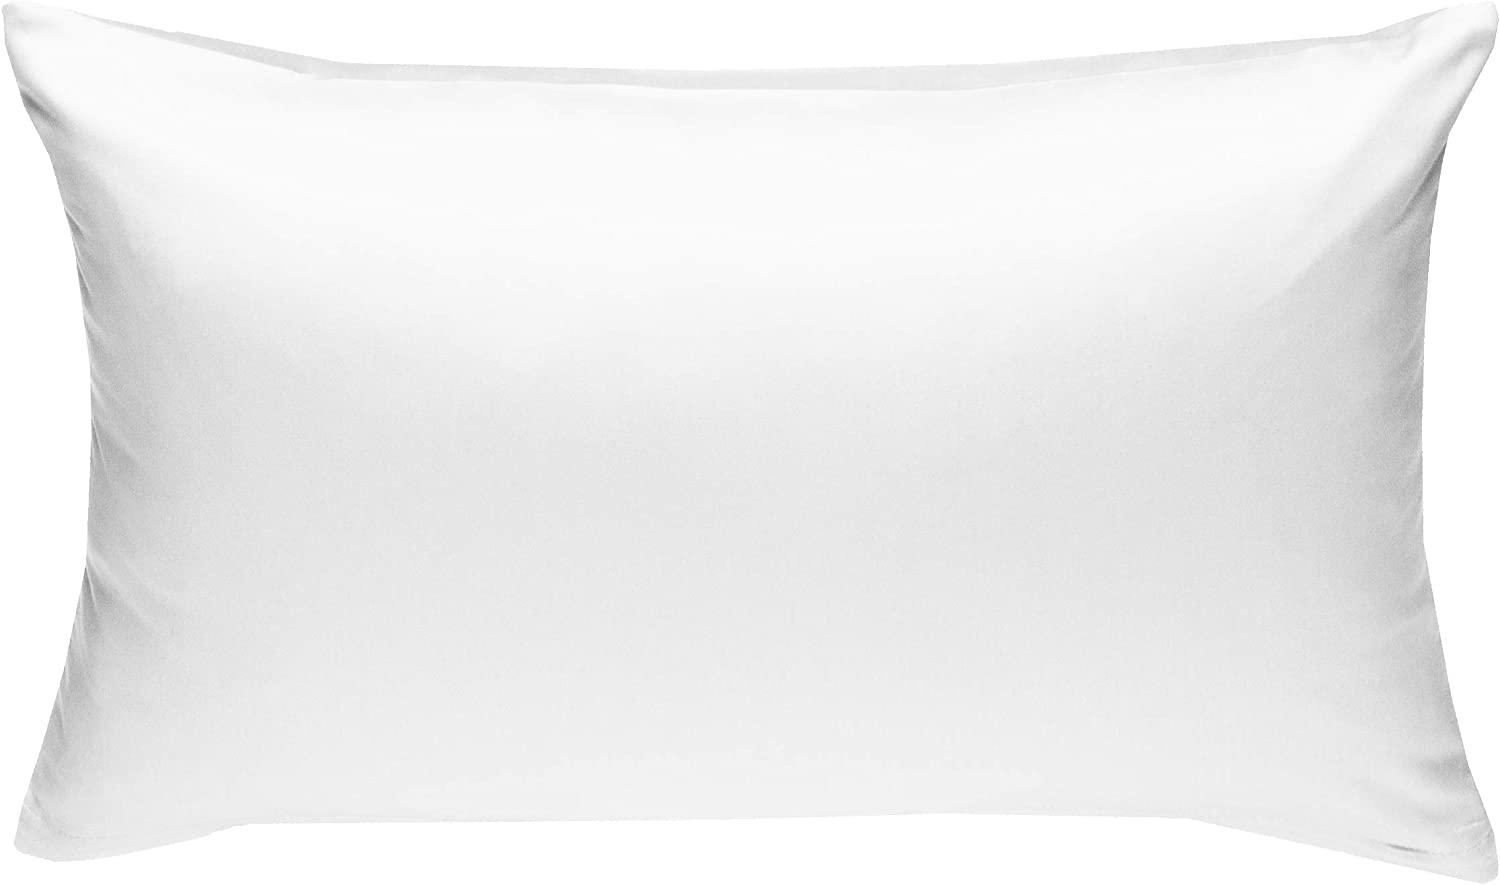 Bettwaesche-mit-Stil Mako-Satin / Baumwollsatin Bettwäsche uni / einfarbig weiß Kissenbezug 60x80 cm Bild 1